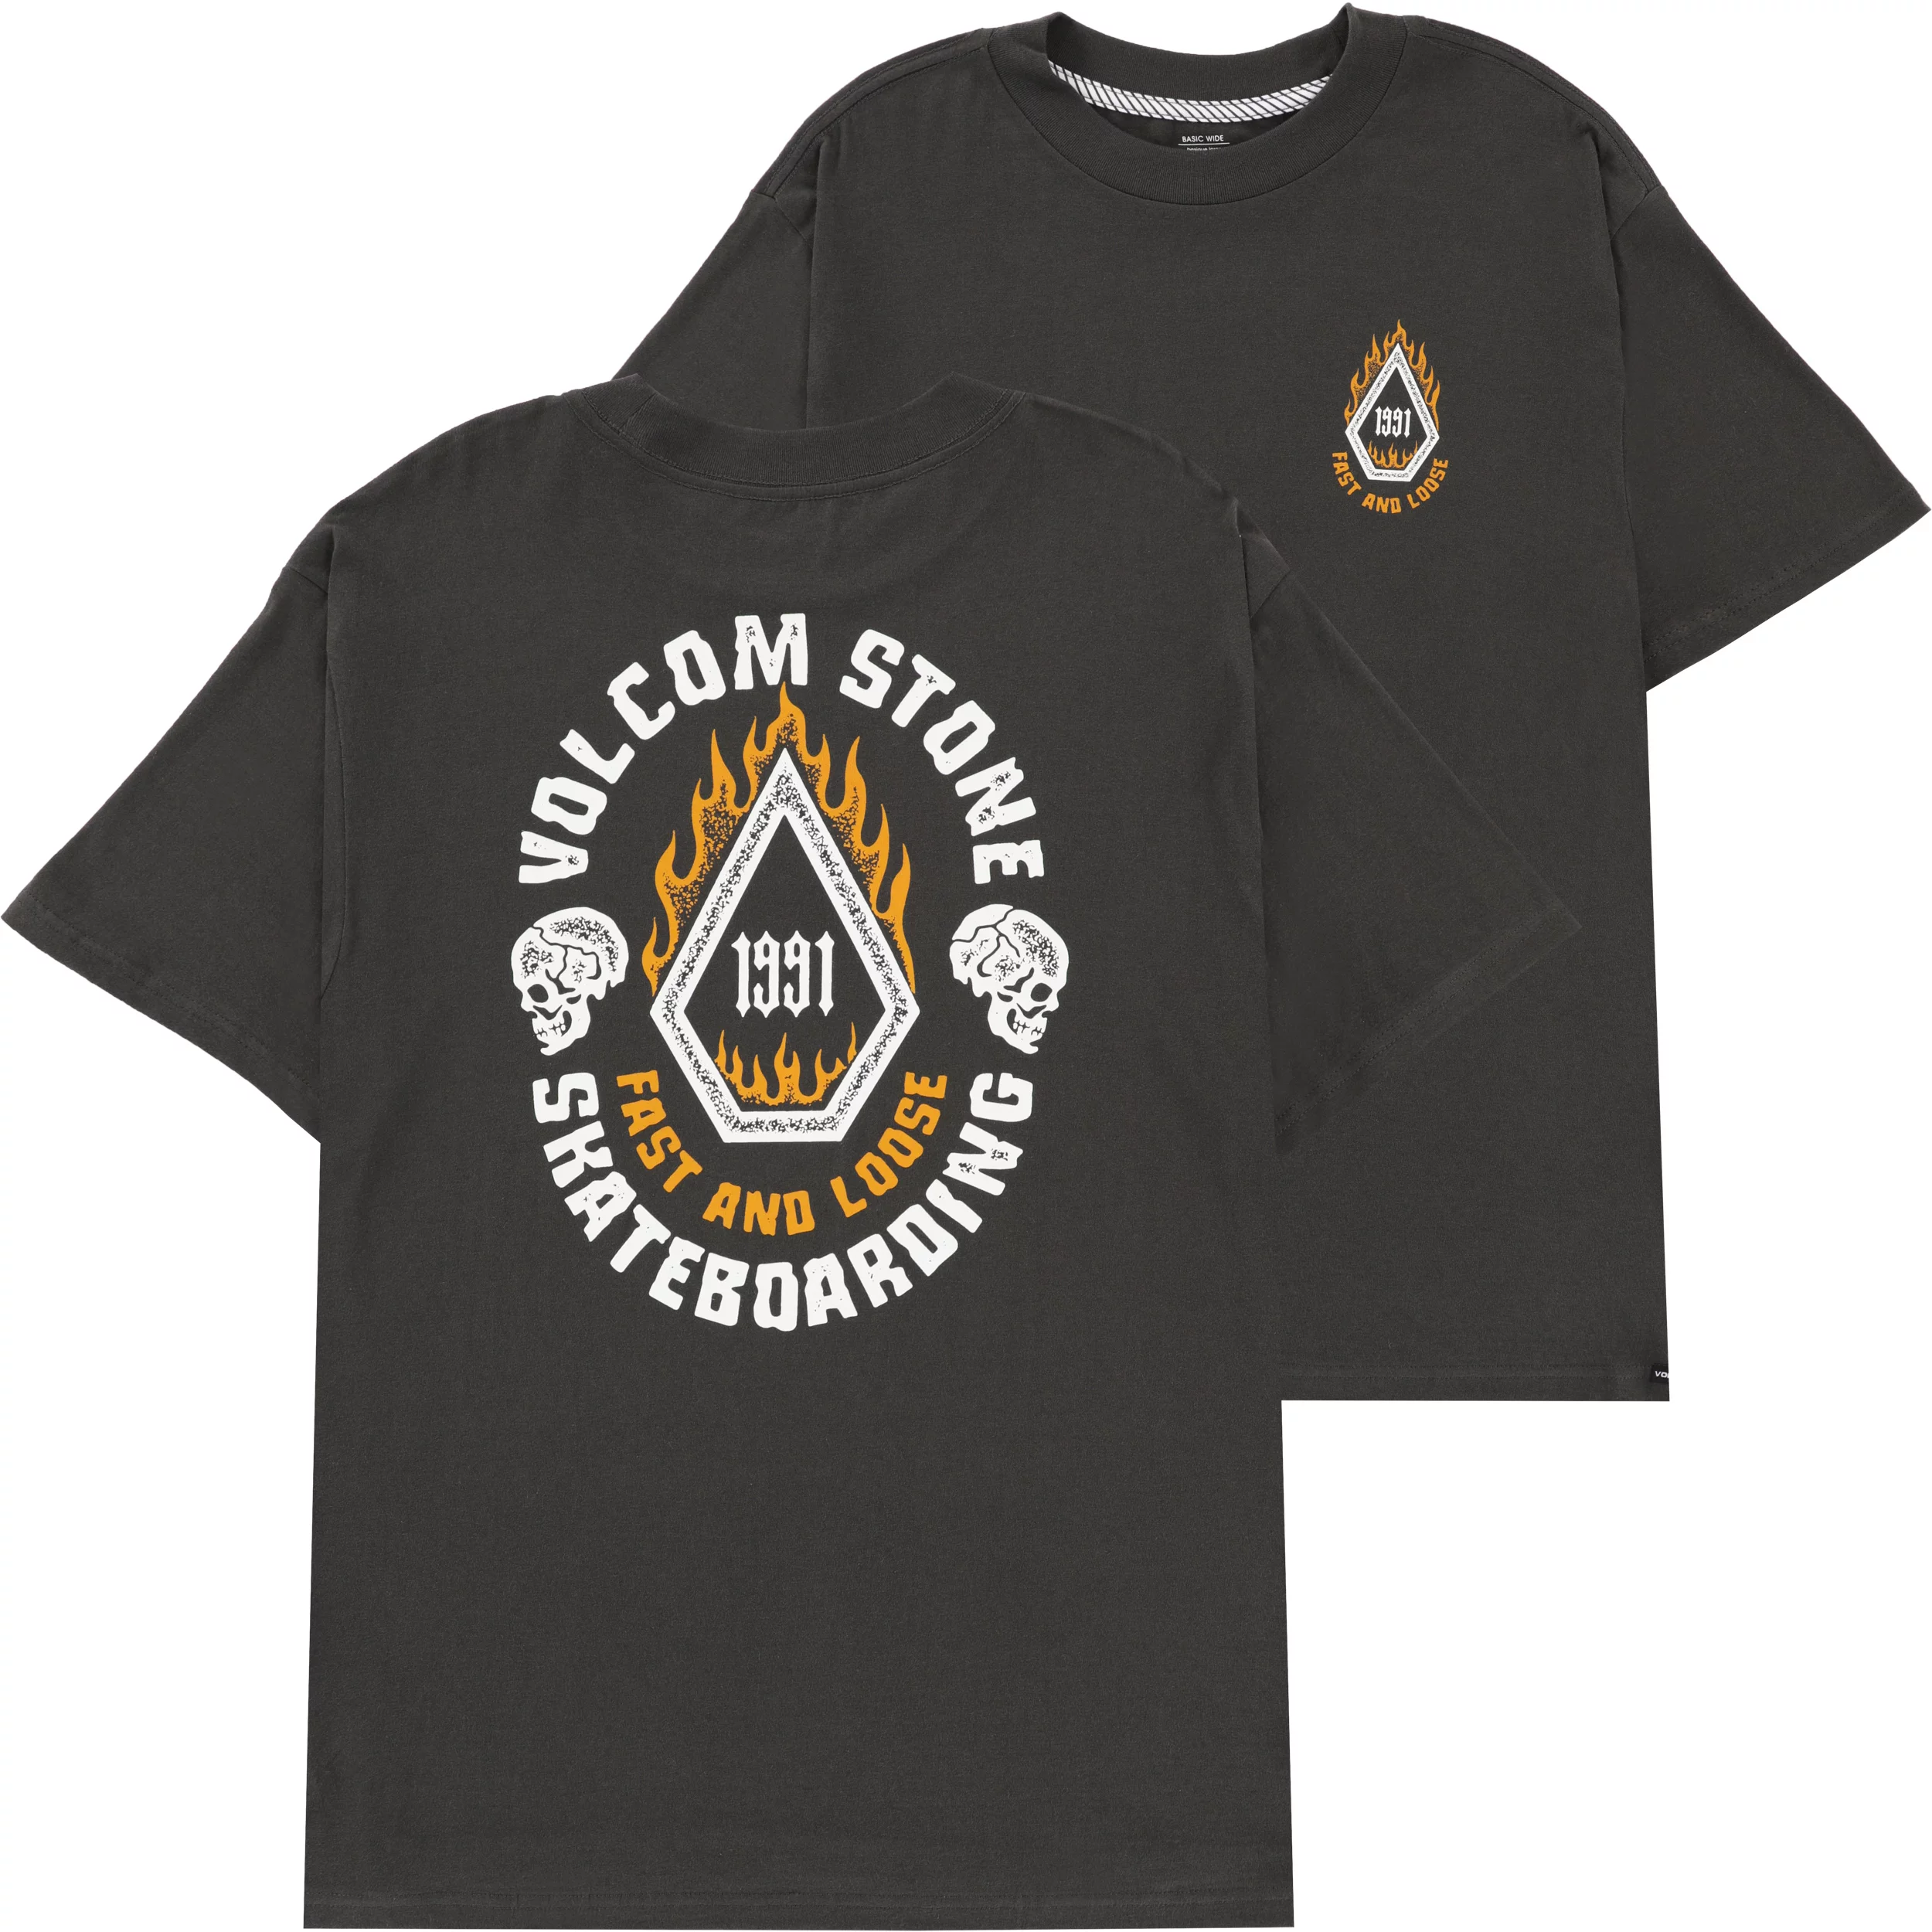 Volcom Co-lab T-shirts – Easy Rider